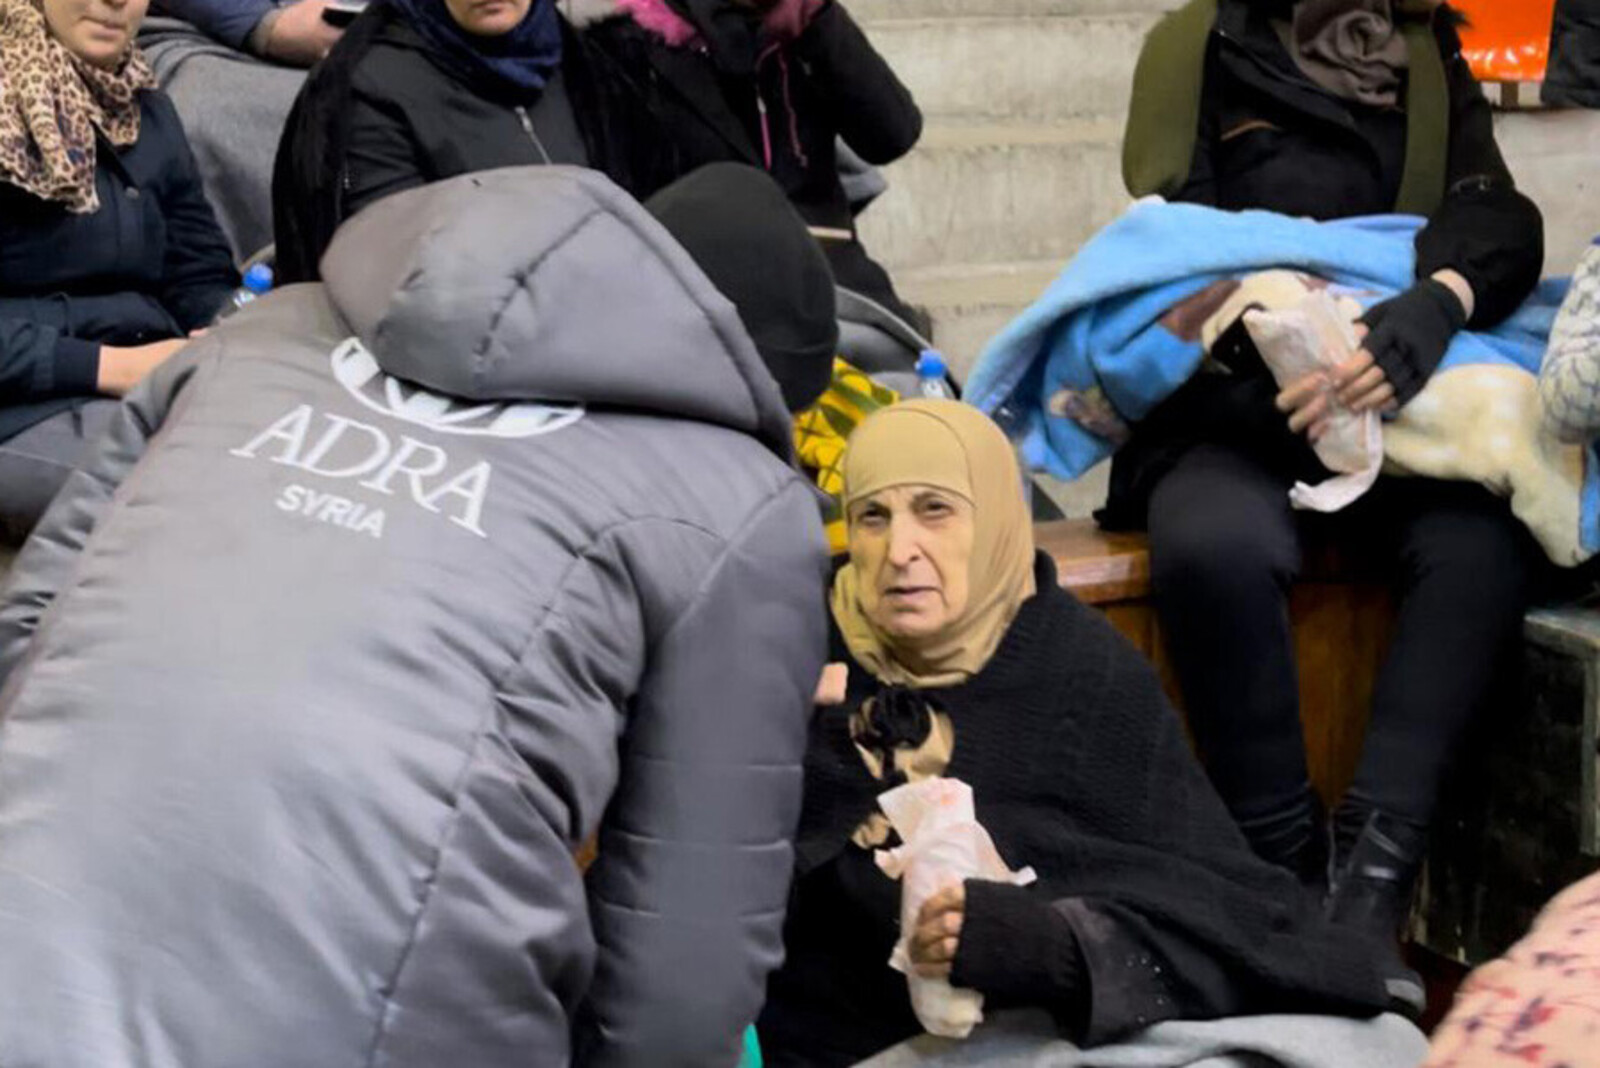 Helferin von ADRA im Gespräch mit Menschen in einer Notunterkunft nach dem Erdbeben in Syrien